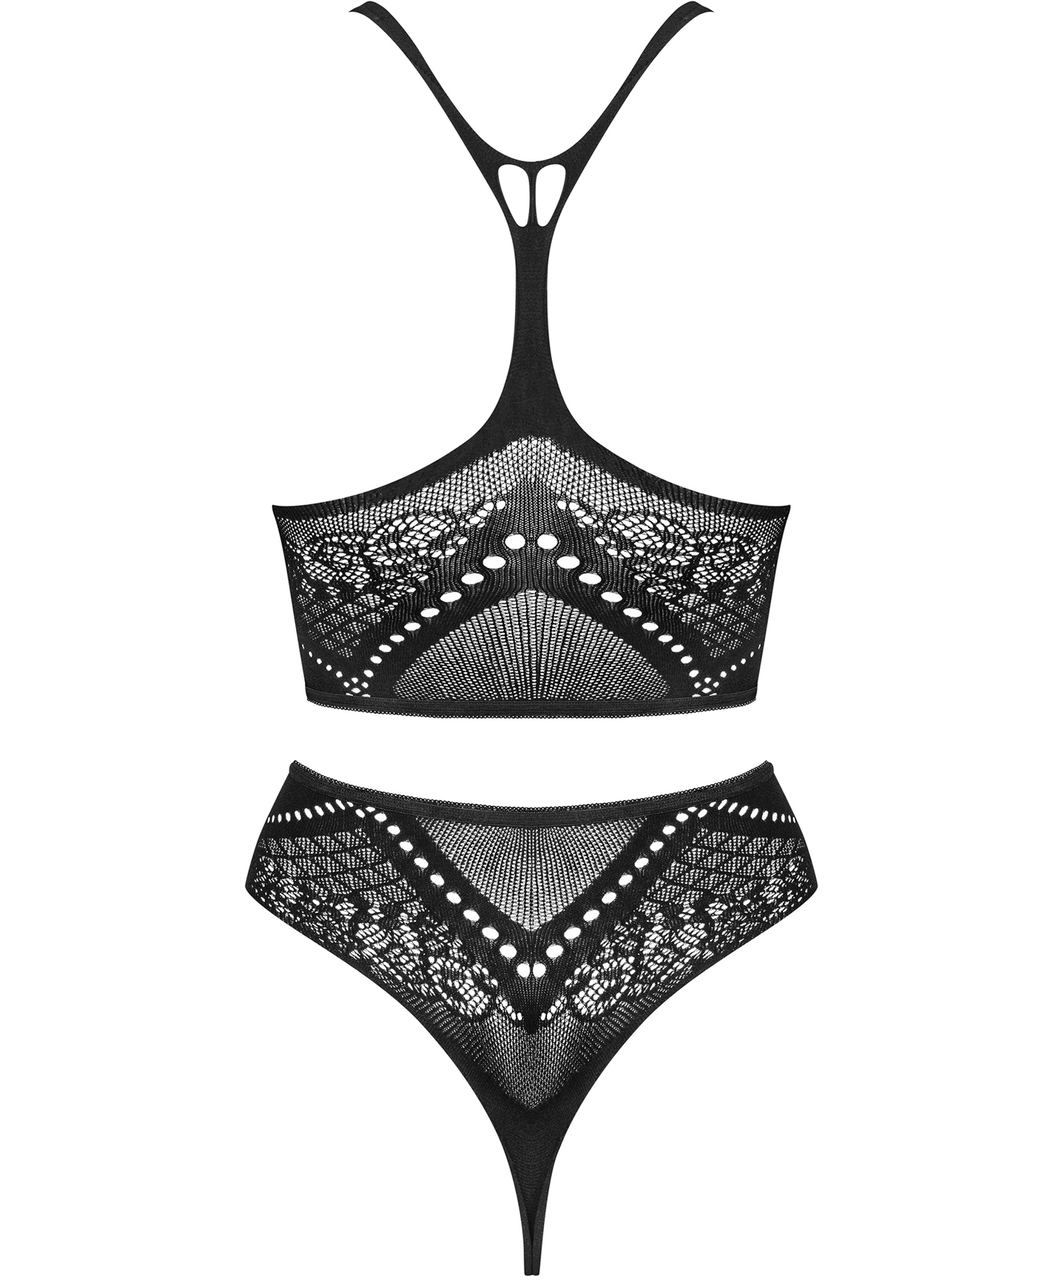 Obsessive K103 black net lingerie set